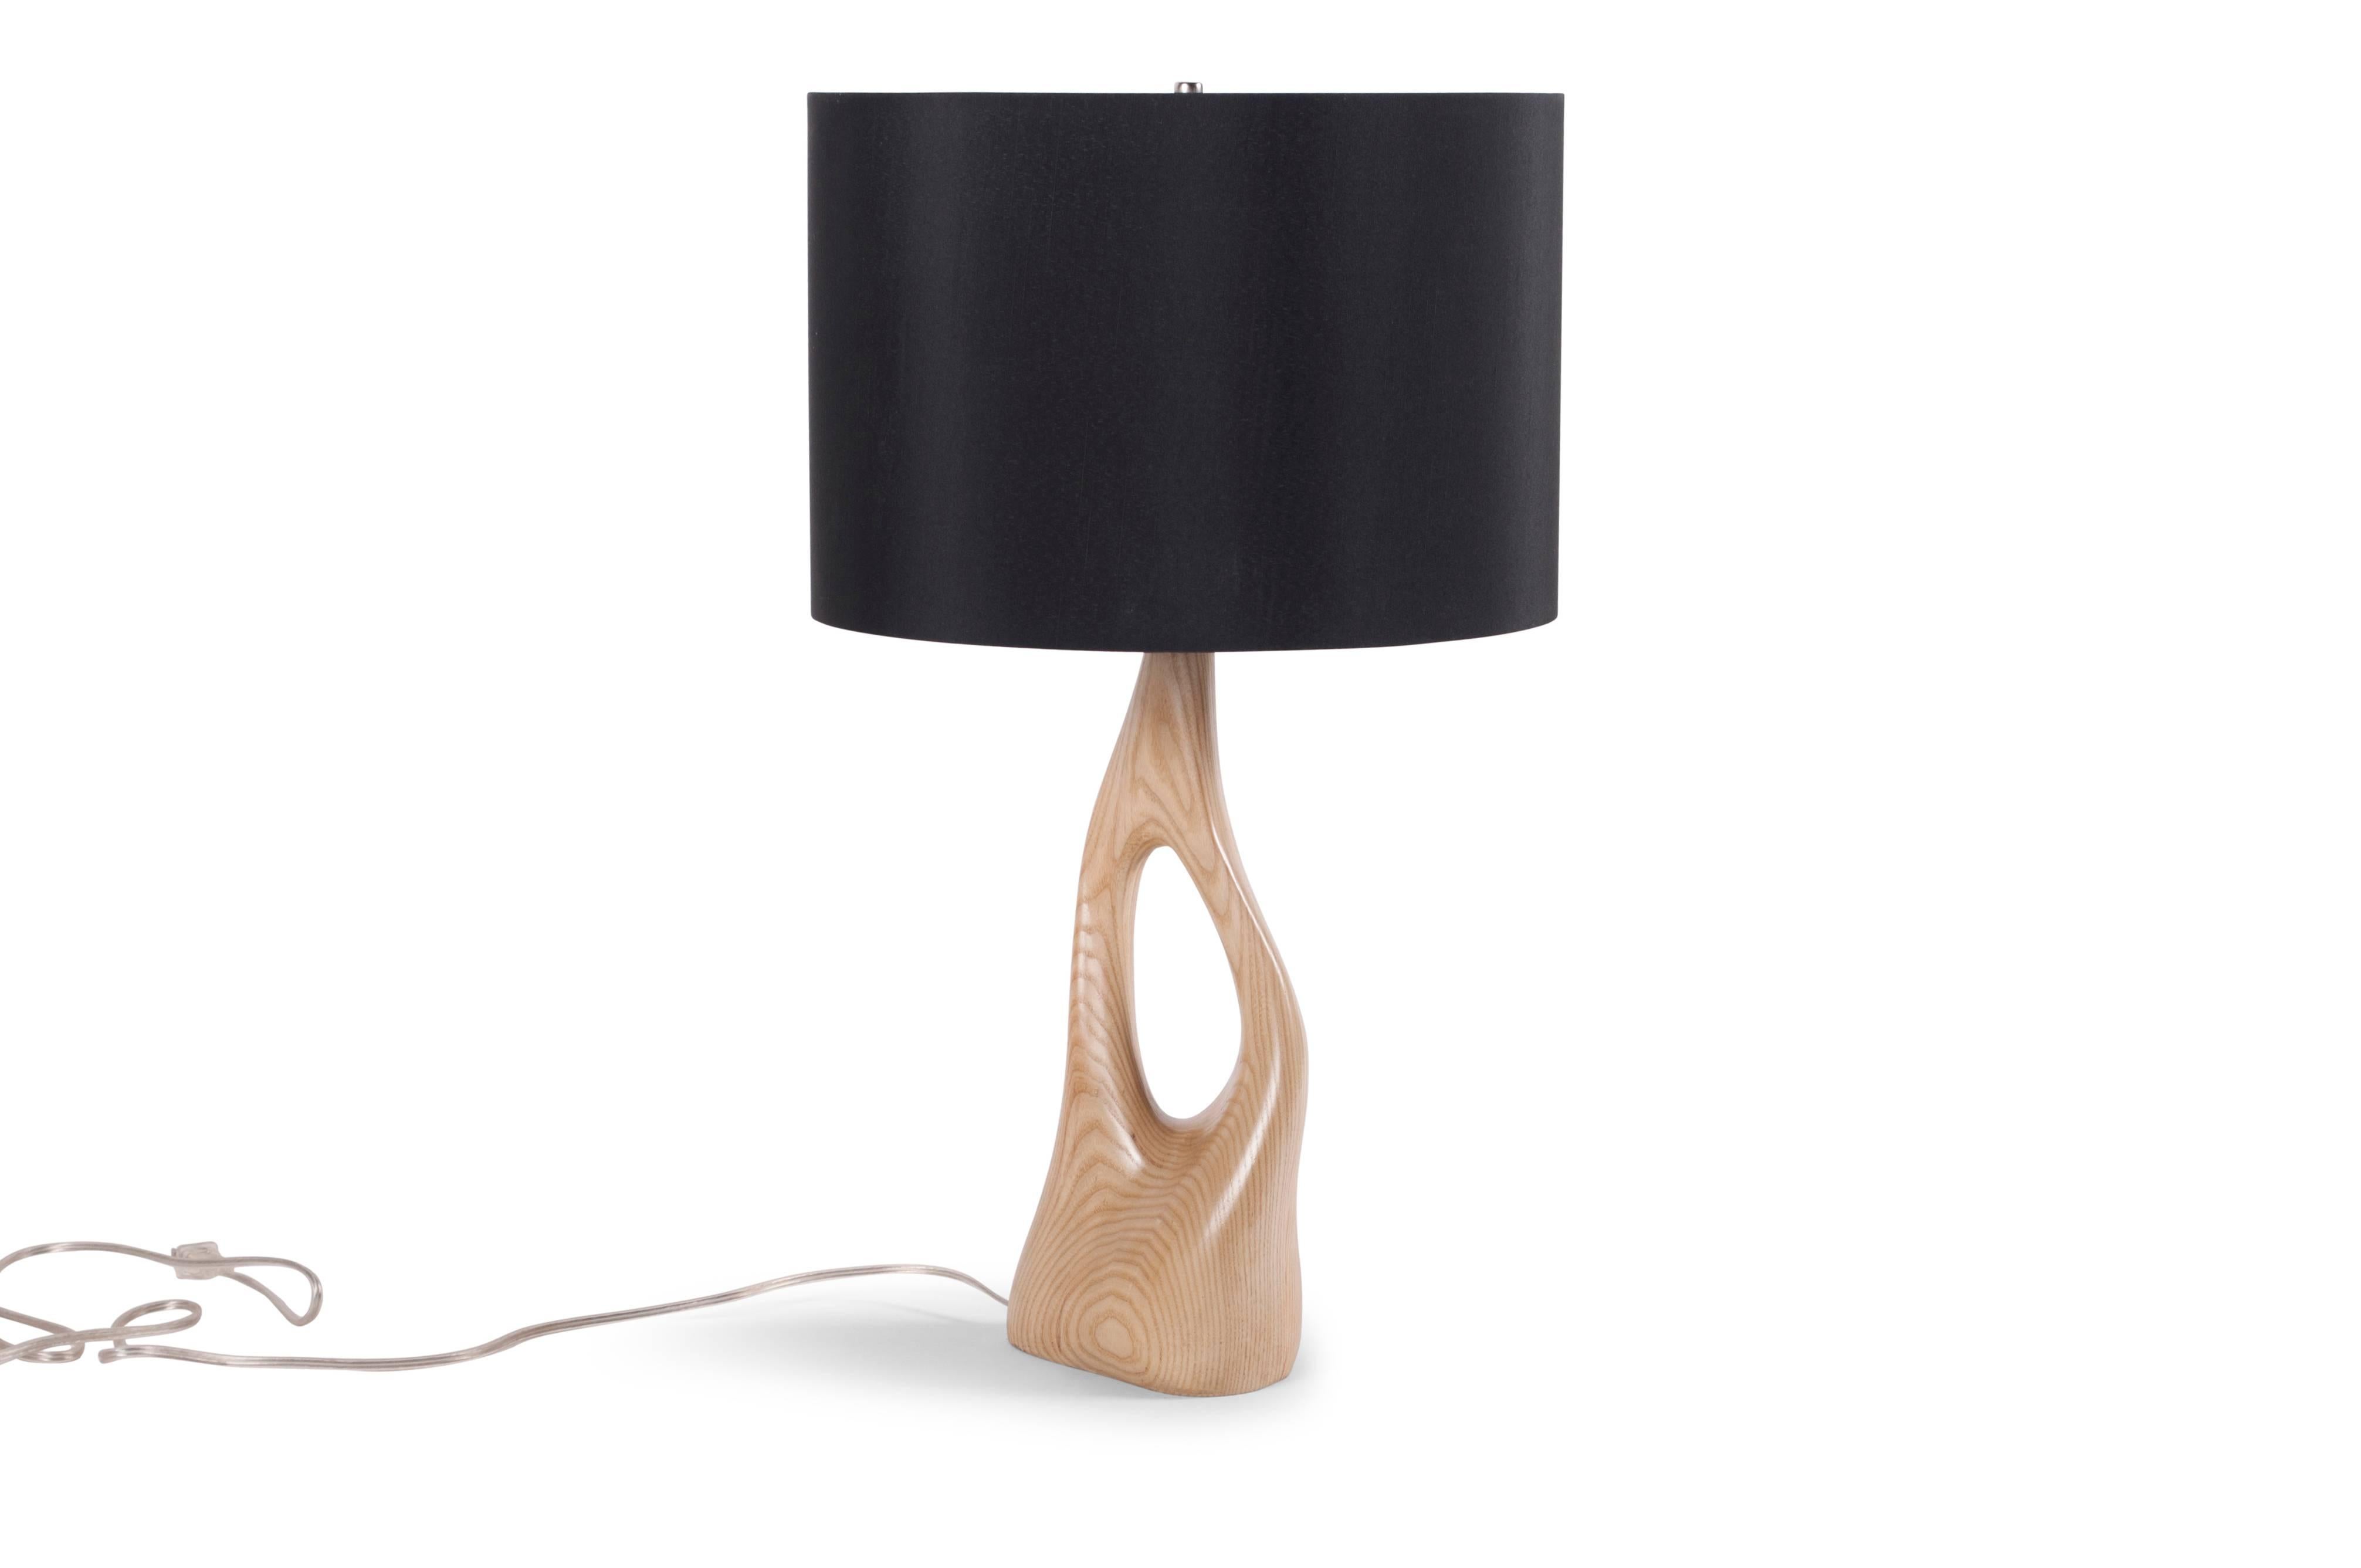 Lampe de table conçue par Amorph en bois de frêne massif. Couleur de la teinture : javellisé et teinté naturel
Dimension de la base : 16